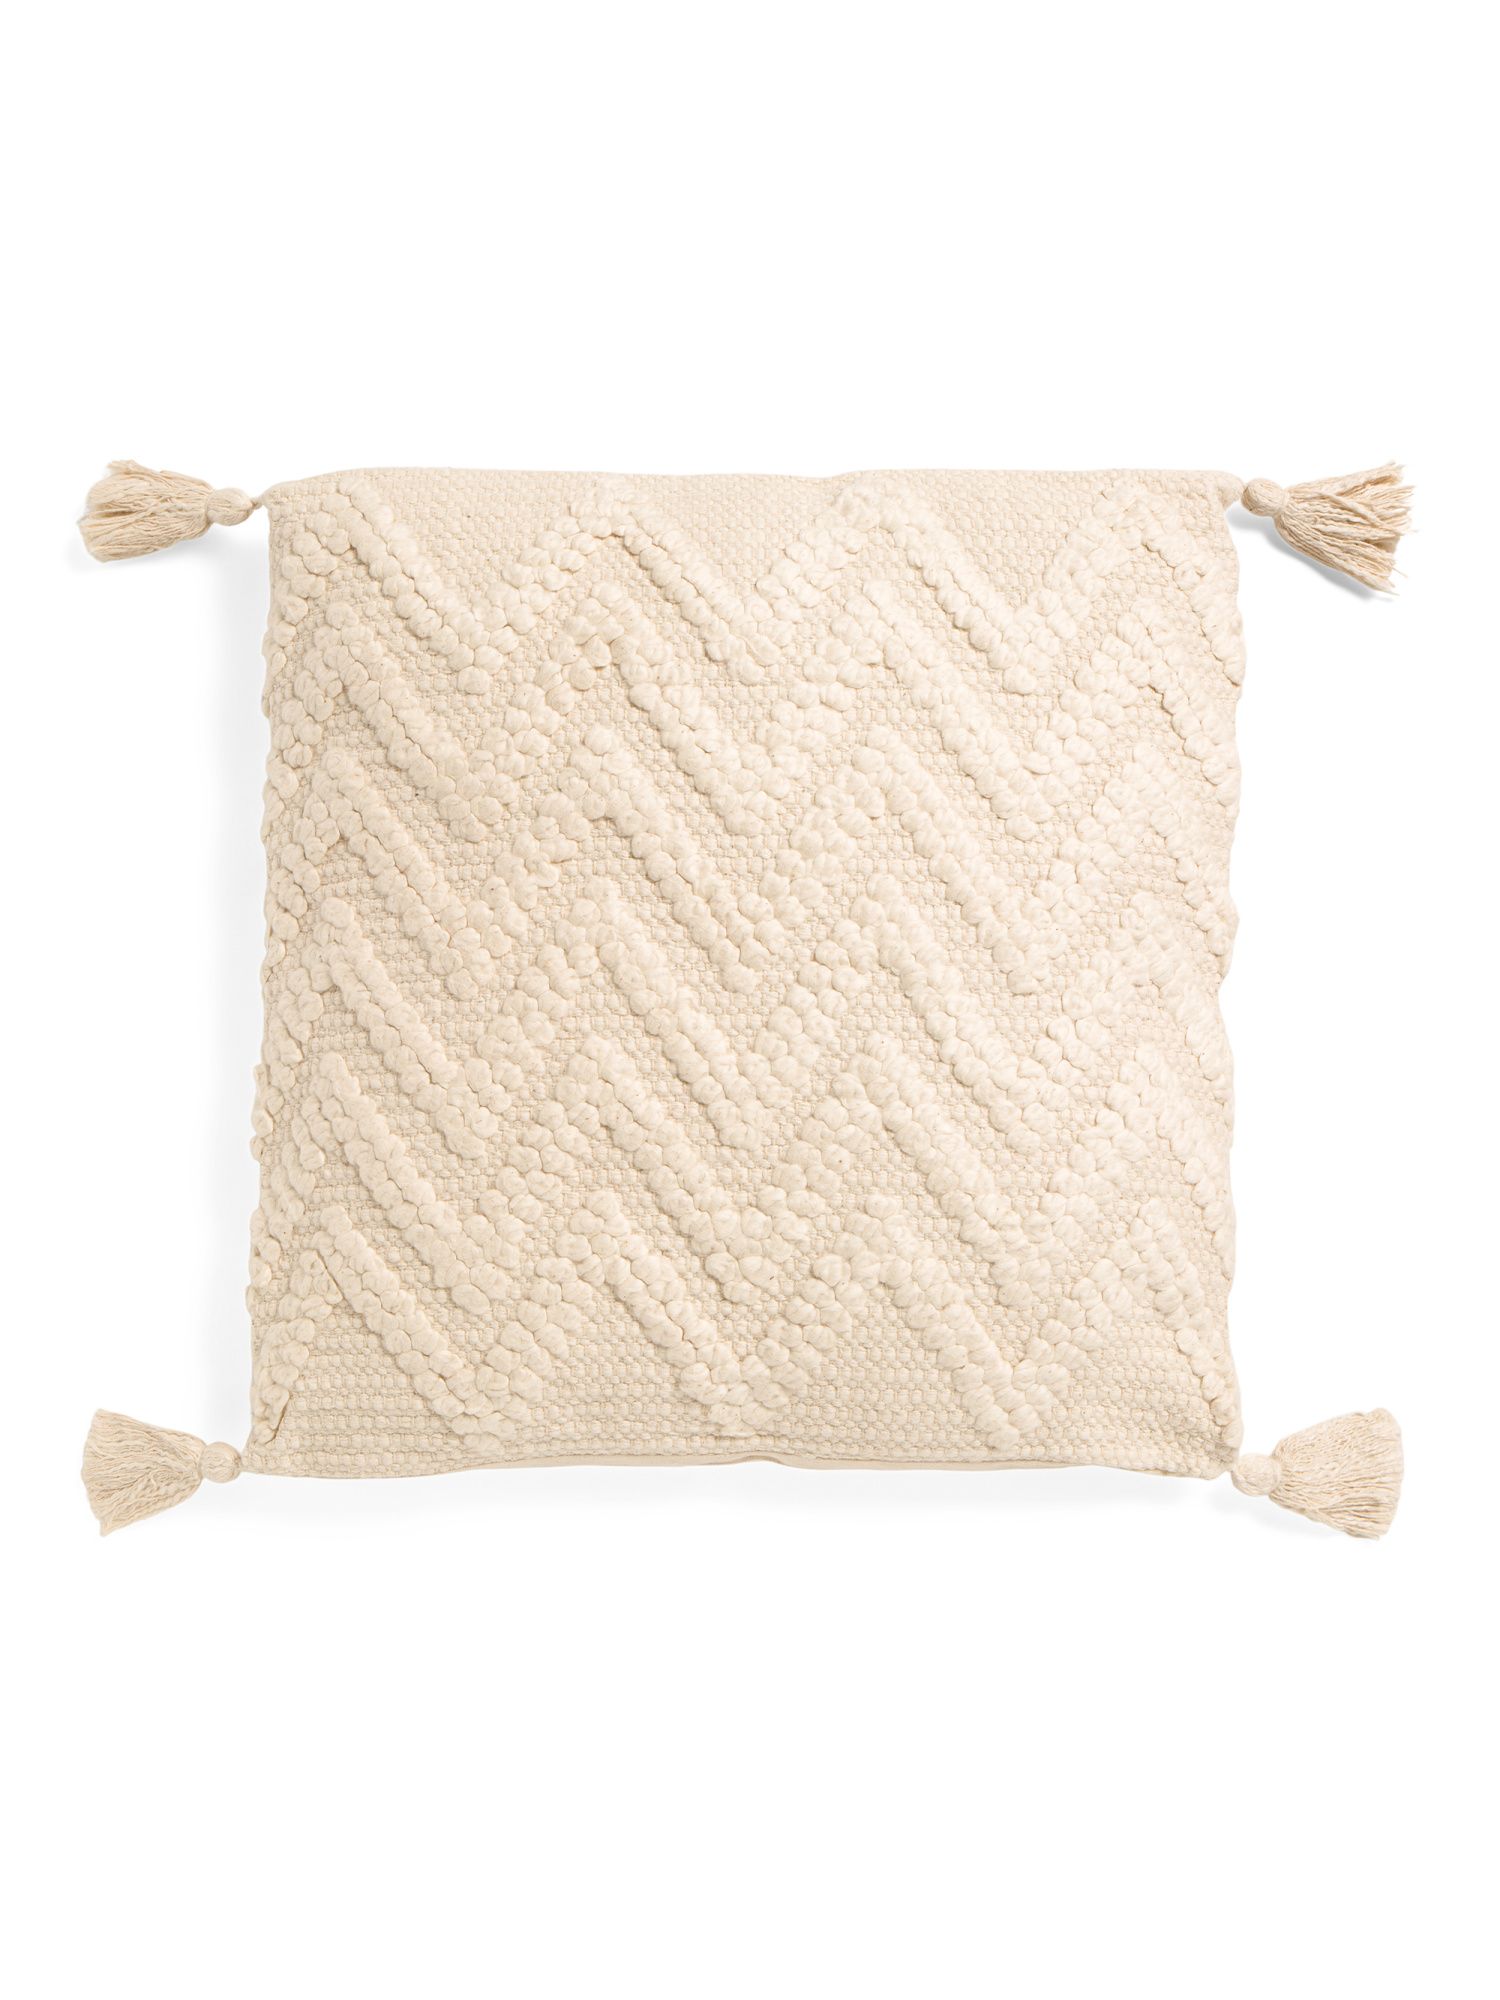 20x20 Textured Chevron Pillow With Tassles | TJ Maxx